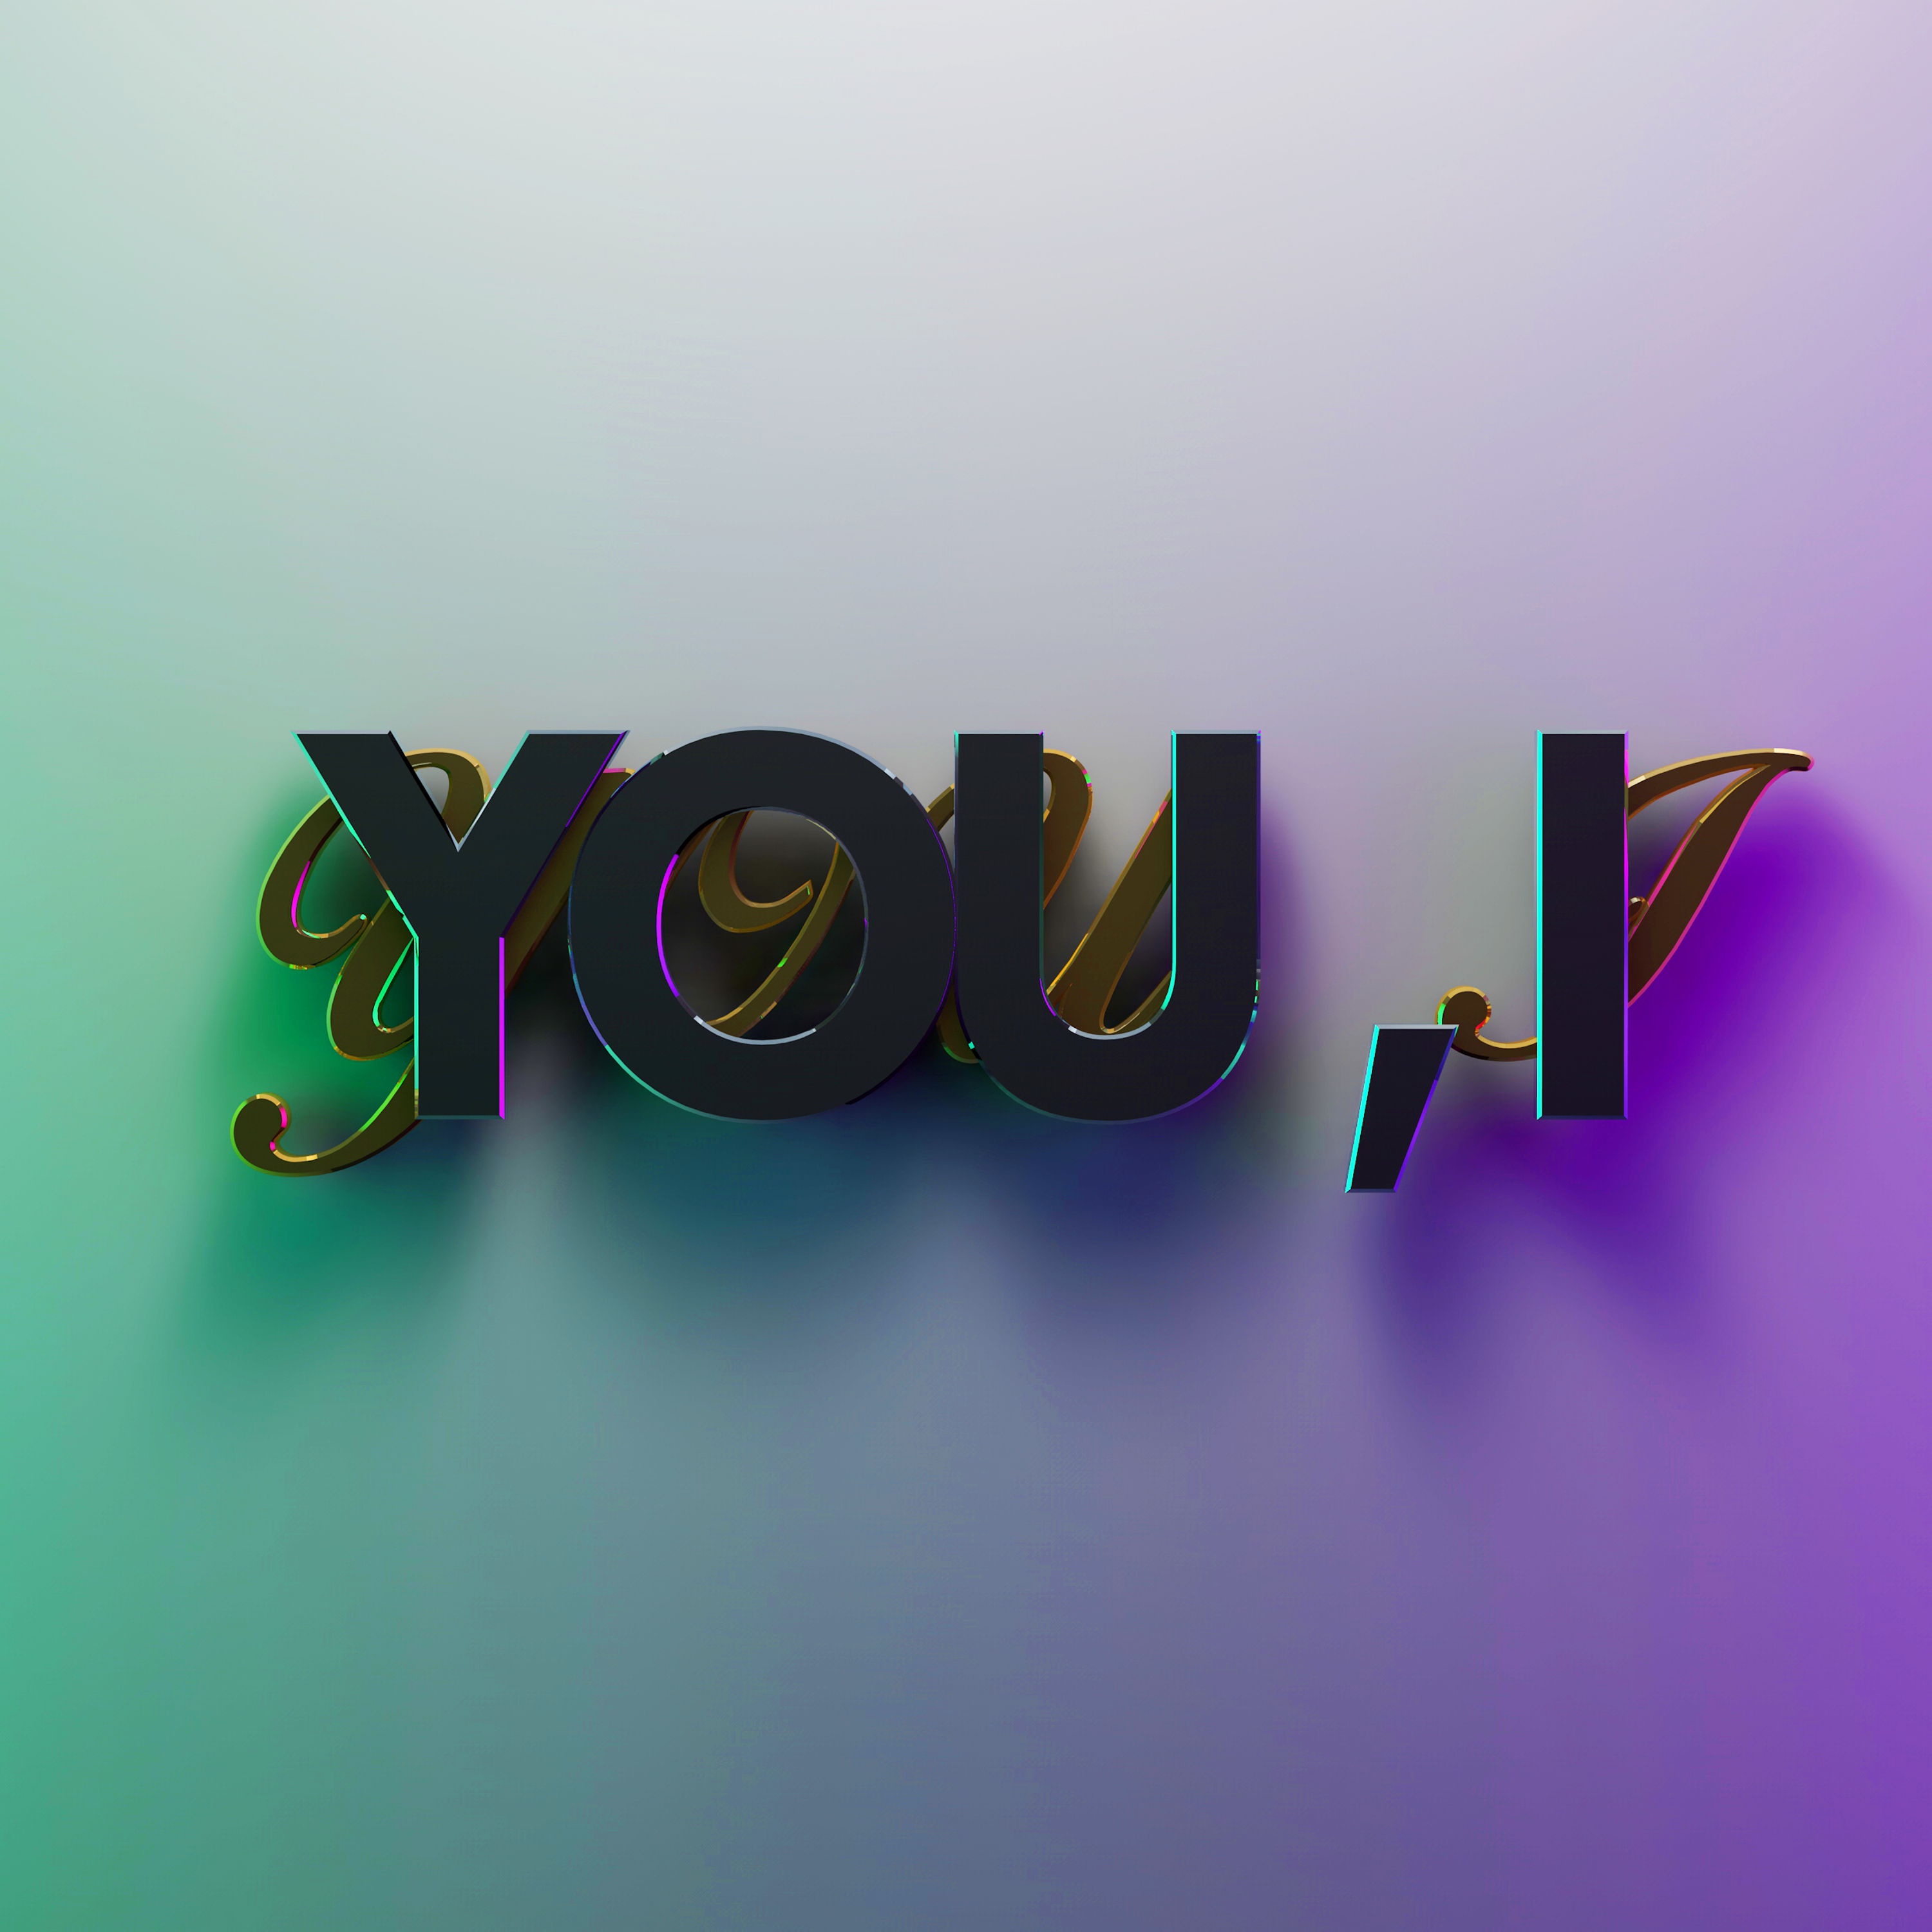 You, I